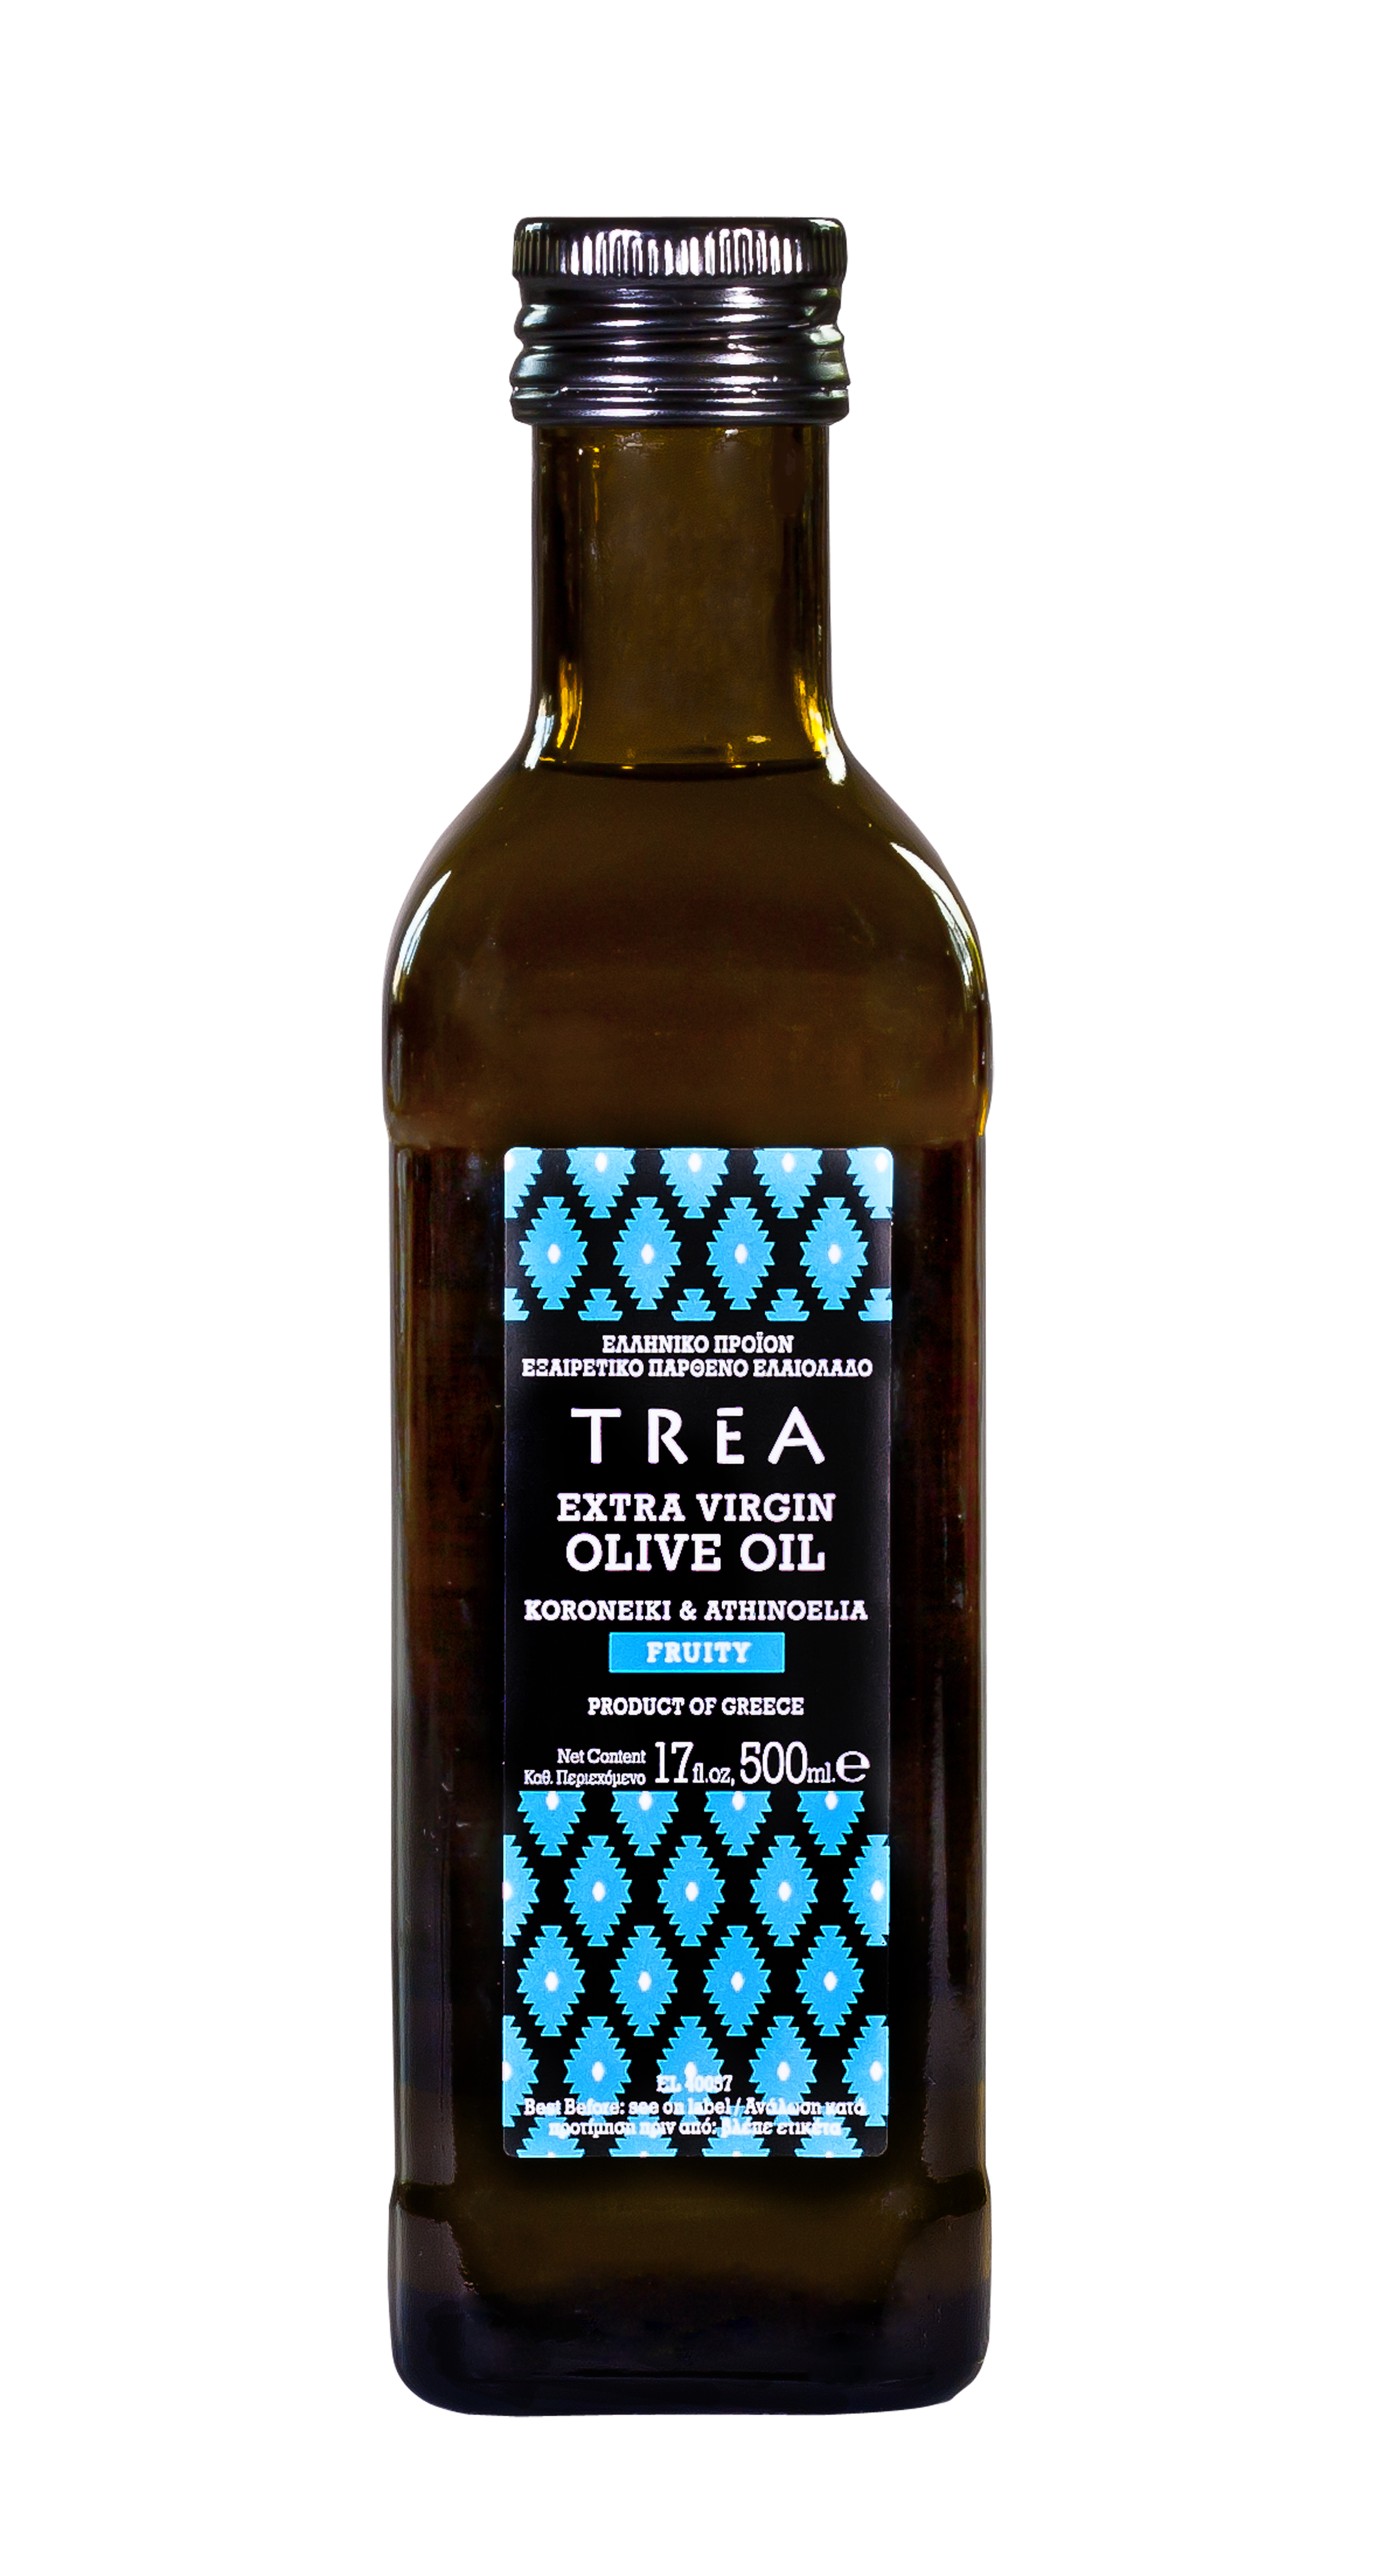 Griechisches Premium Oliven Öl, extra  vergine, fruity aus Koroneiki- und Athinoelia-Oliven, 500 ml